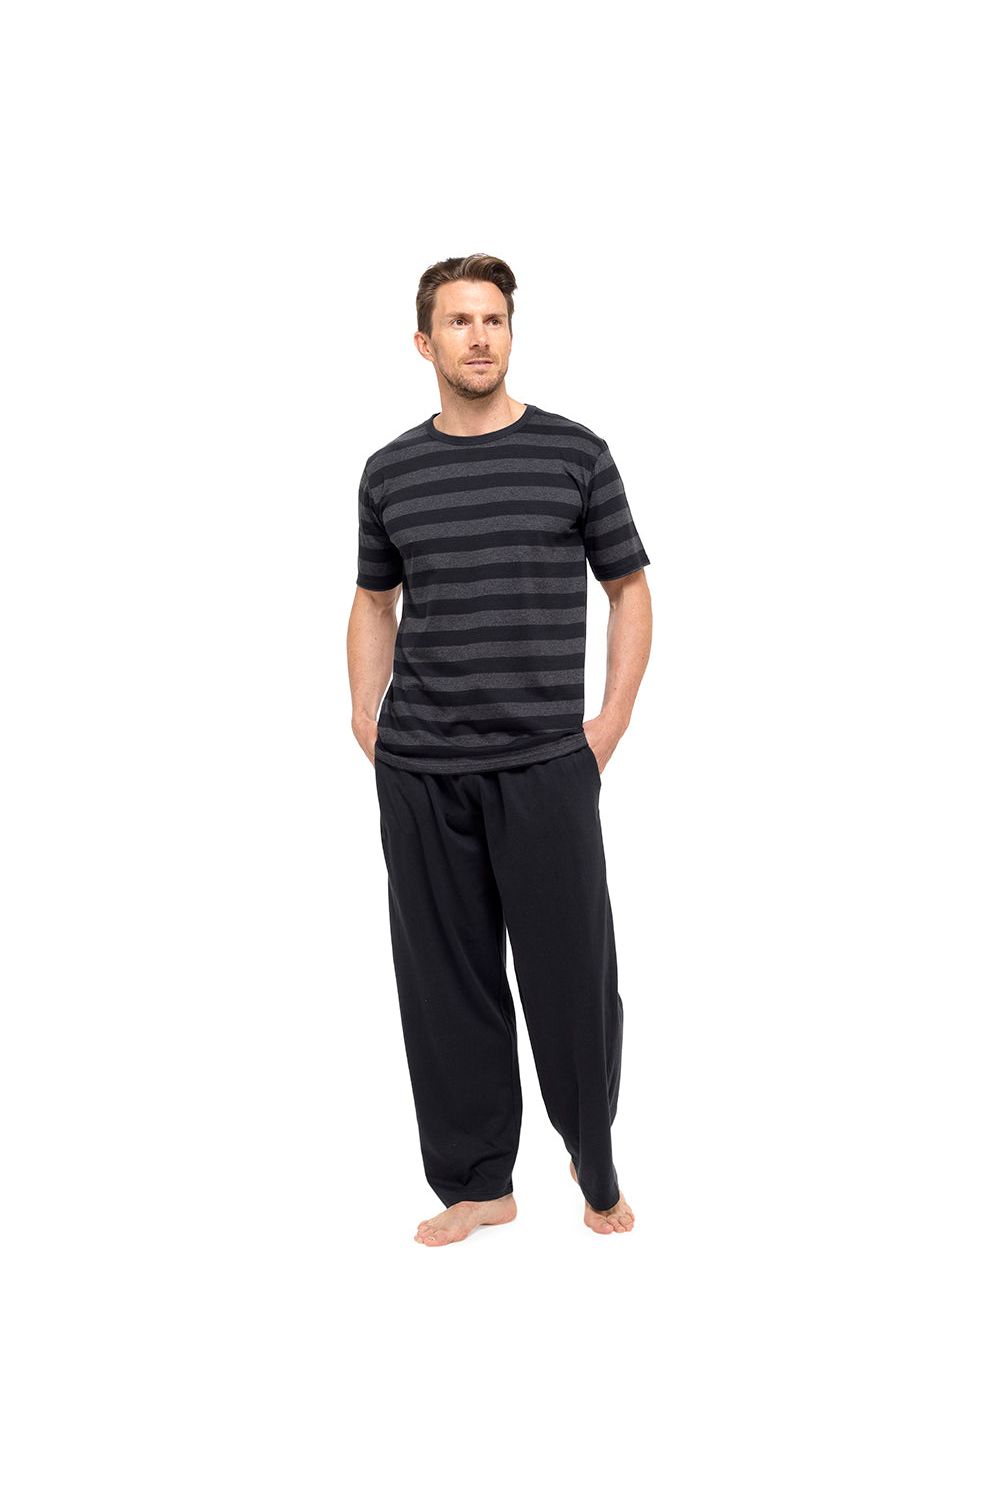 Tom Franks Mens Pyjama Set Short Sleeve Grey Striped Top - Pyjamas.com